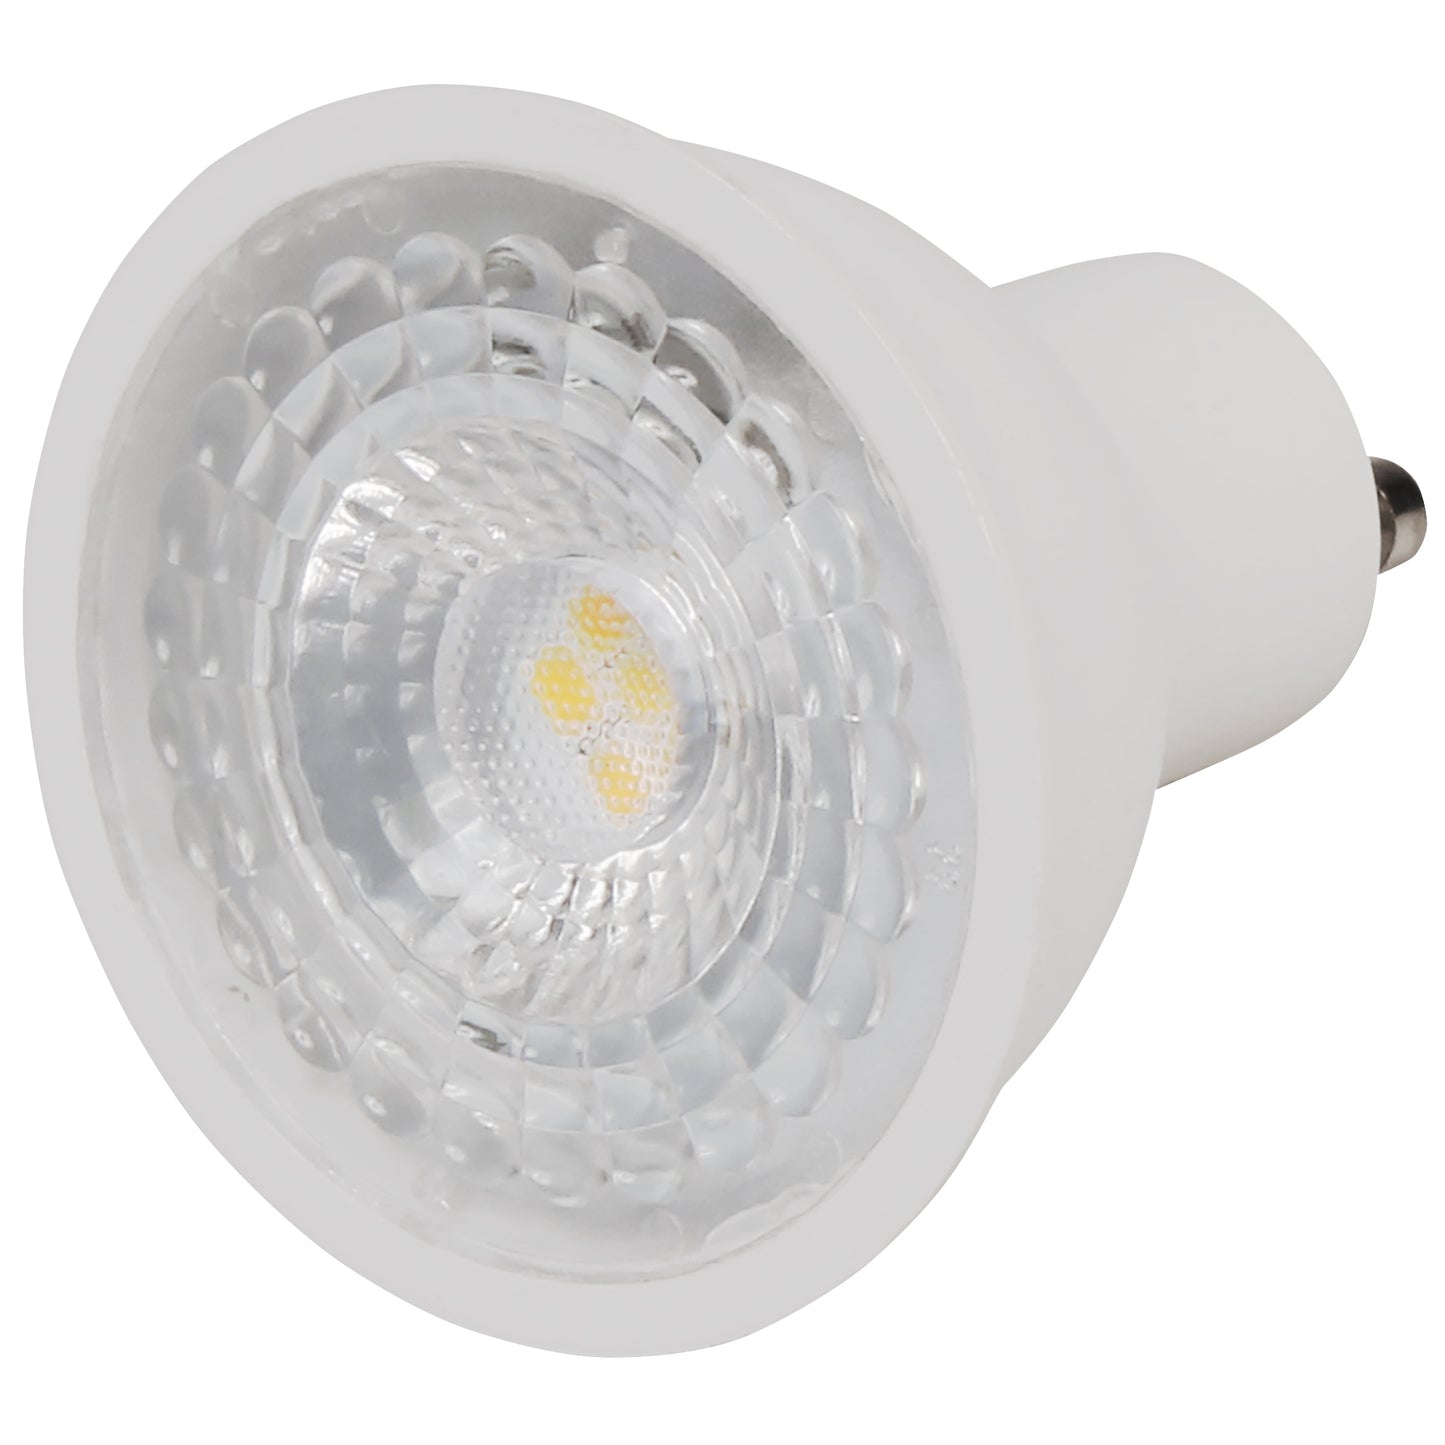 10x LED Leuchtmittel GU10 5W Spot Warmweiß Set Leuchte Strahler Reflektorlampe